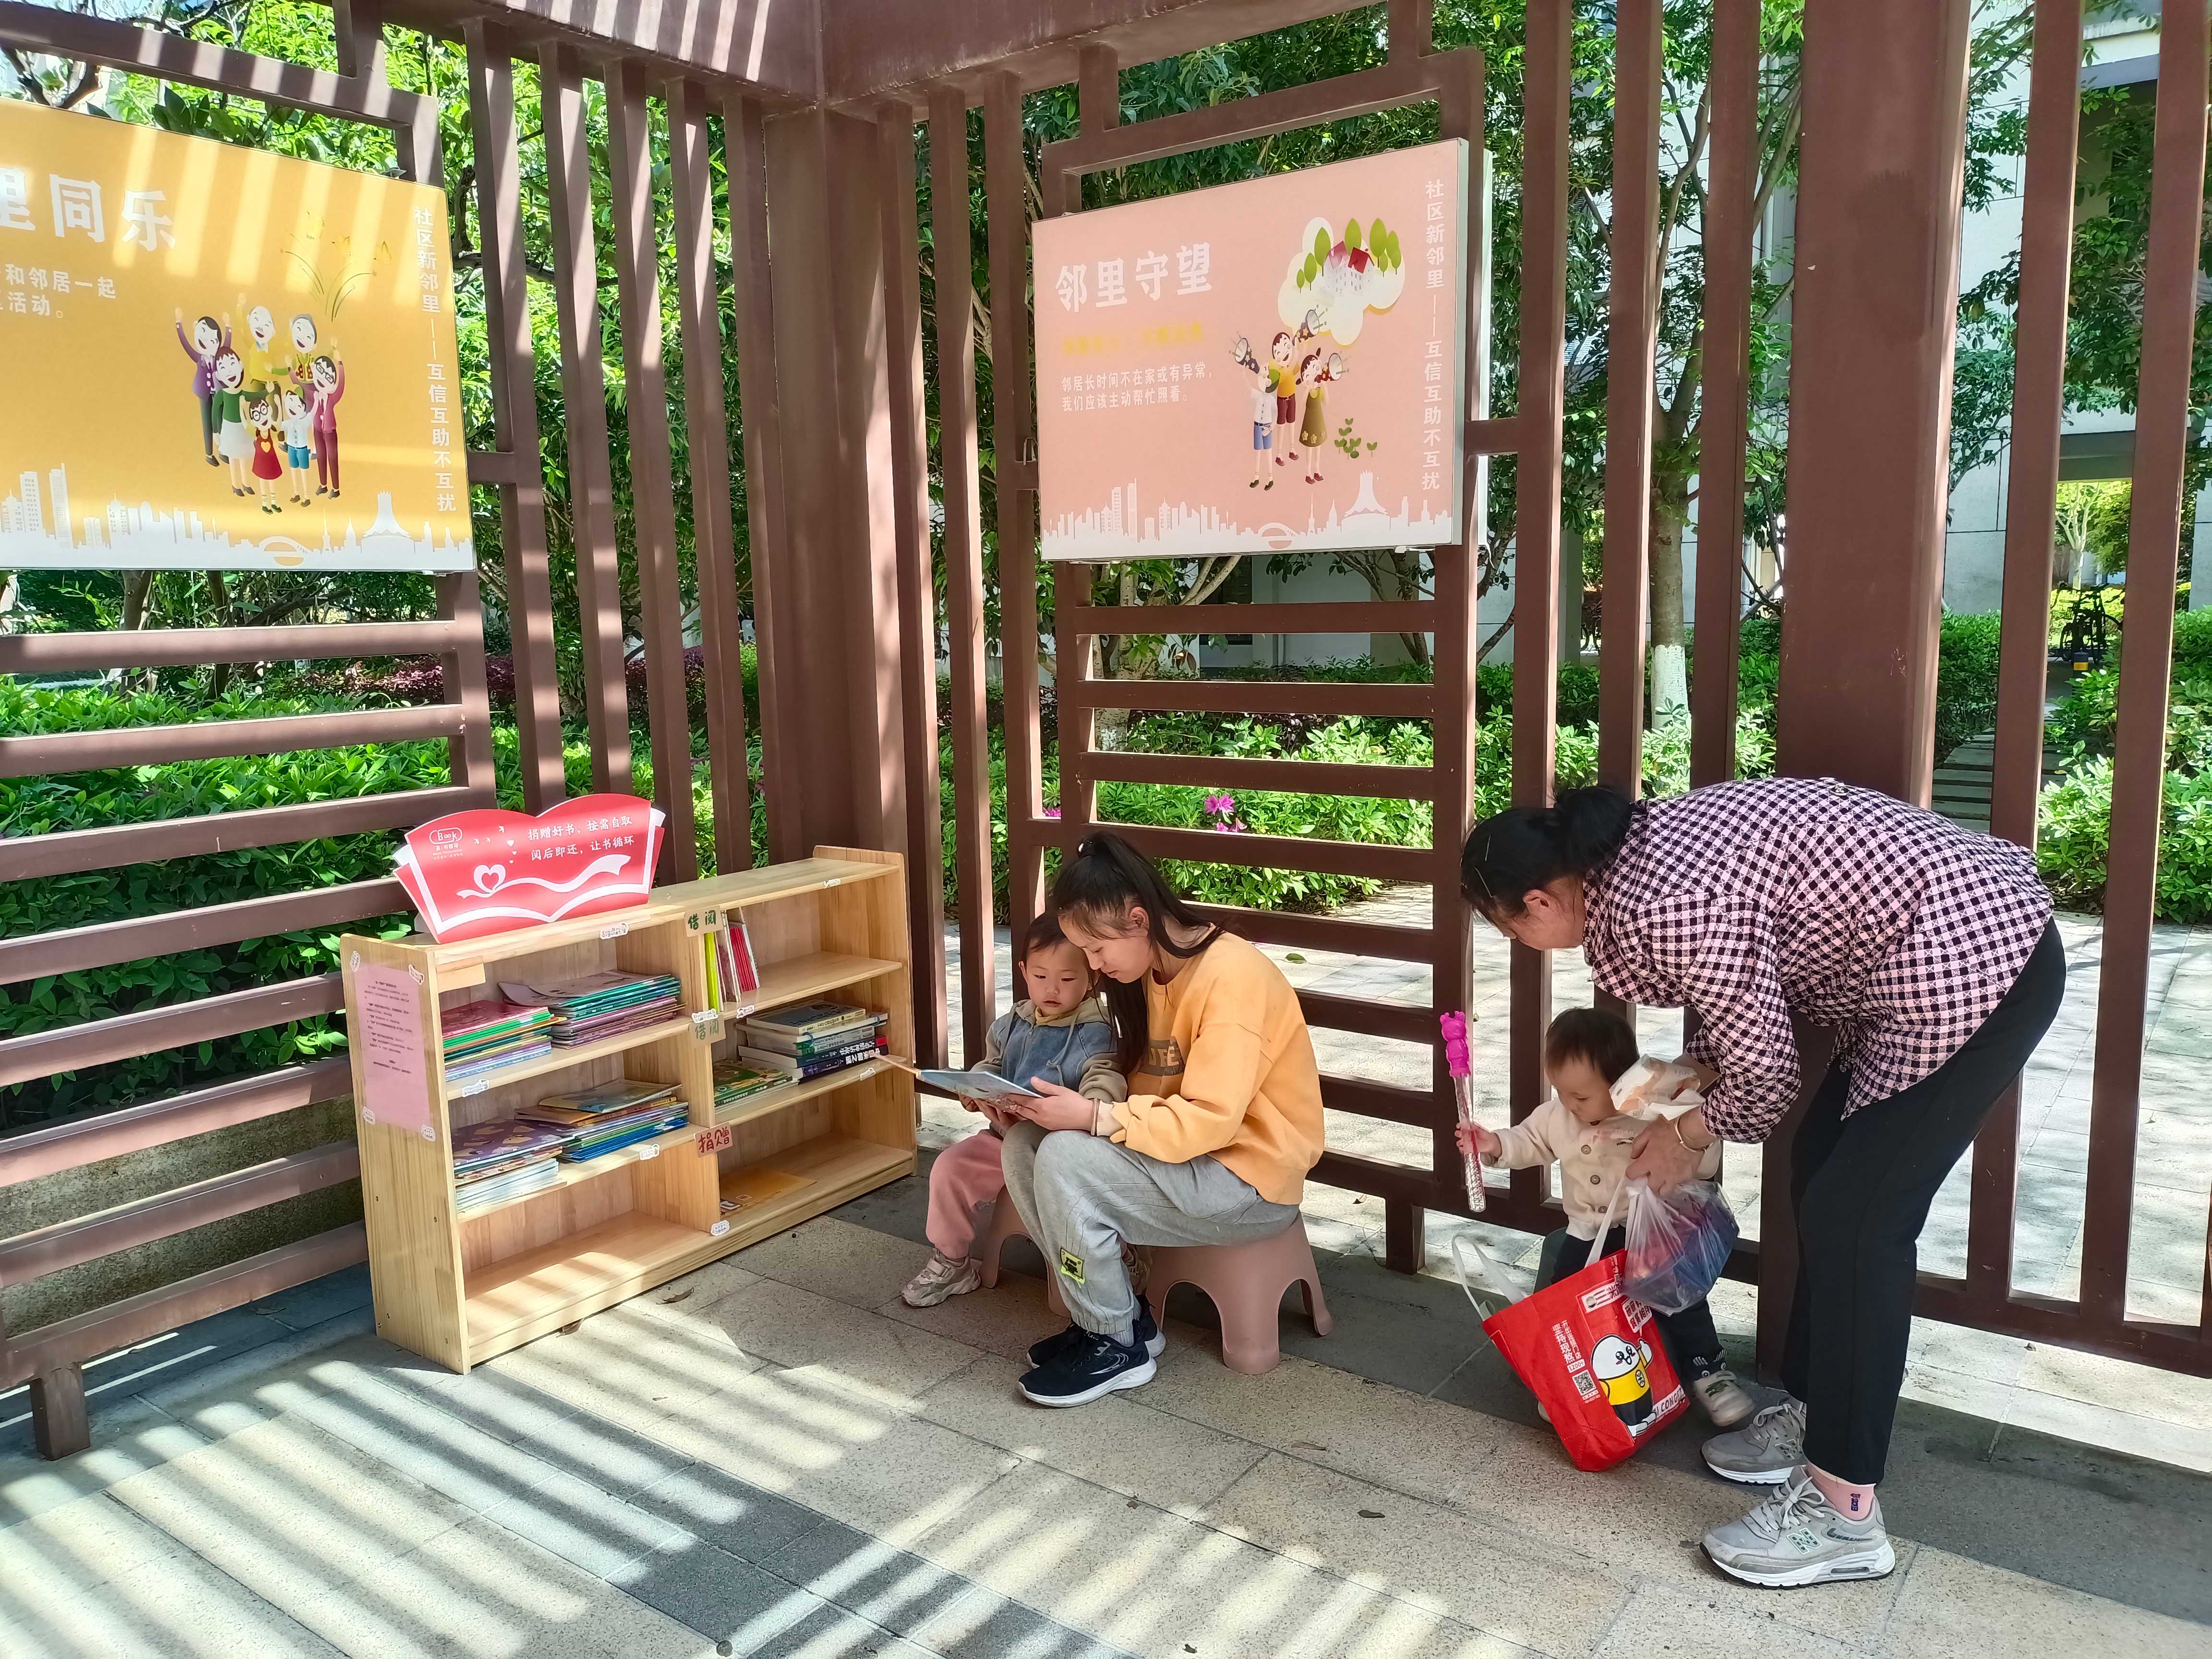 阅读氛围拉满！江北这个社区将共享书架搬进自然